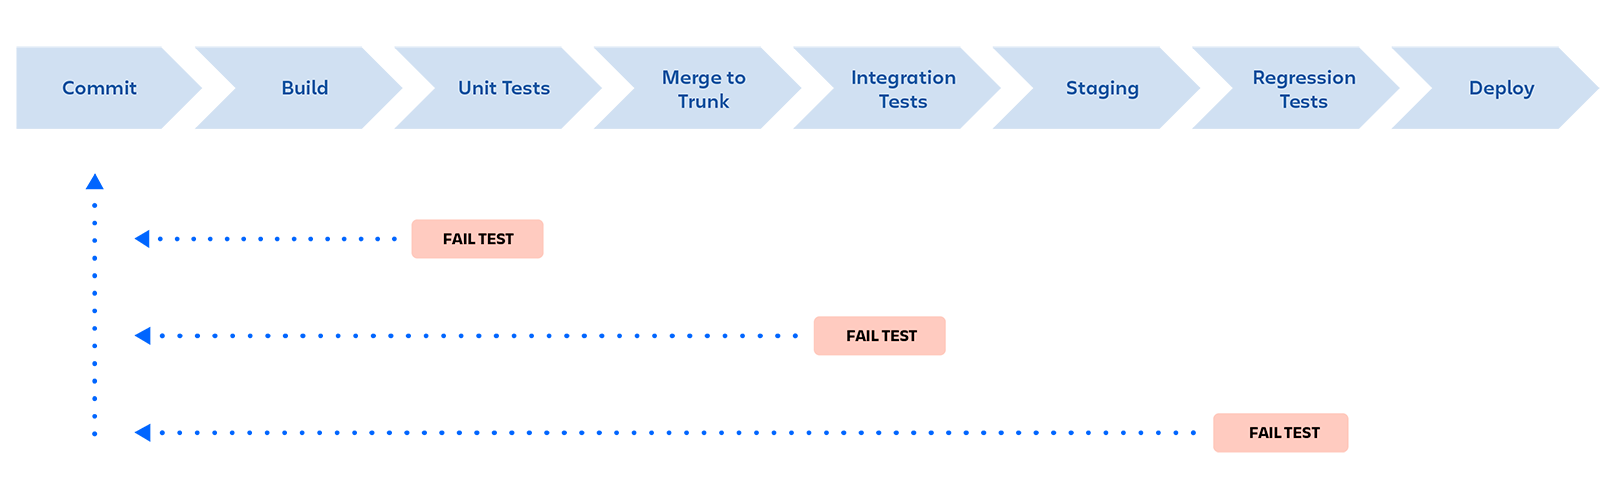 Pipeline de DevOps: commit, build, testes de unidade, mesclar com o tronco, testes de integração, staging, testes de regressão, implementar. O pipeline é interrompido quando um teste falha em qualquer estágio, e um feedback é enviado ao desenvolvedor.